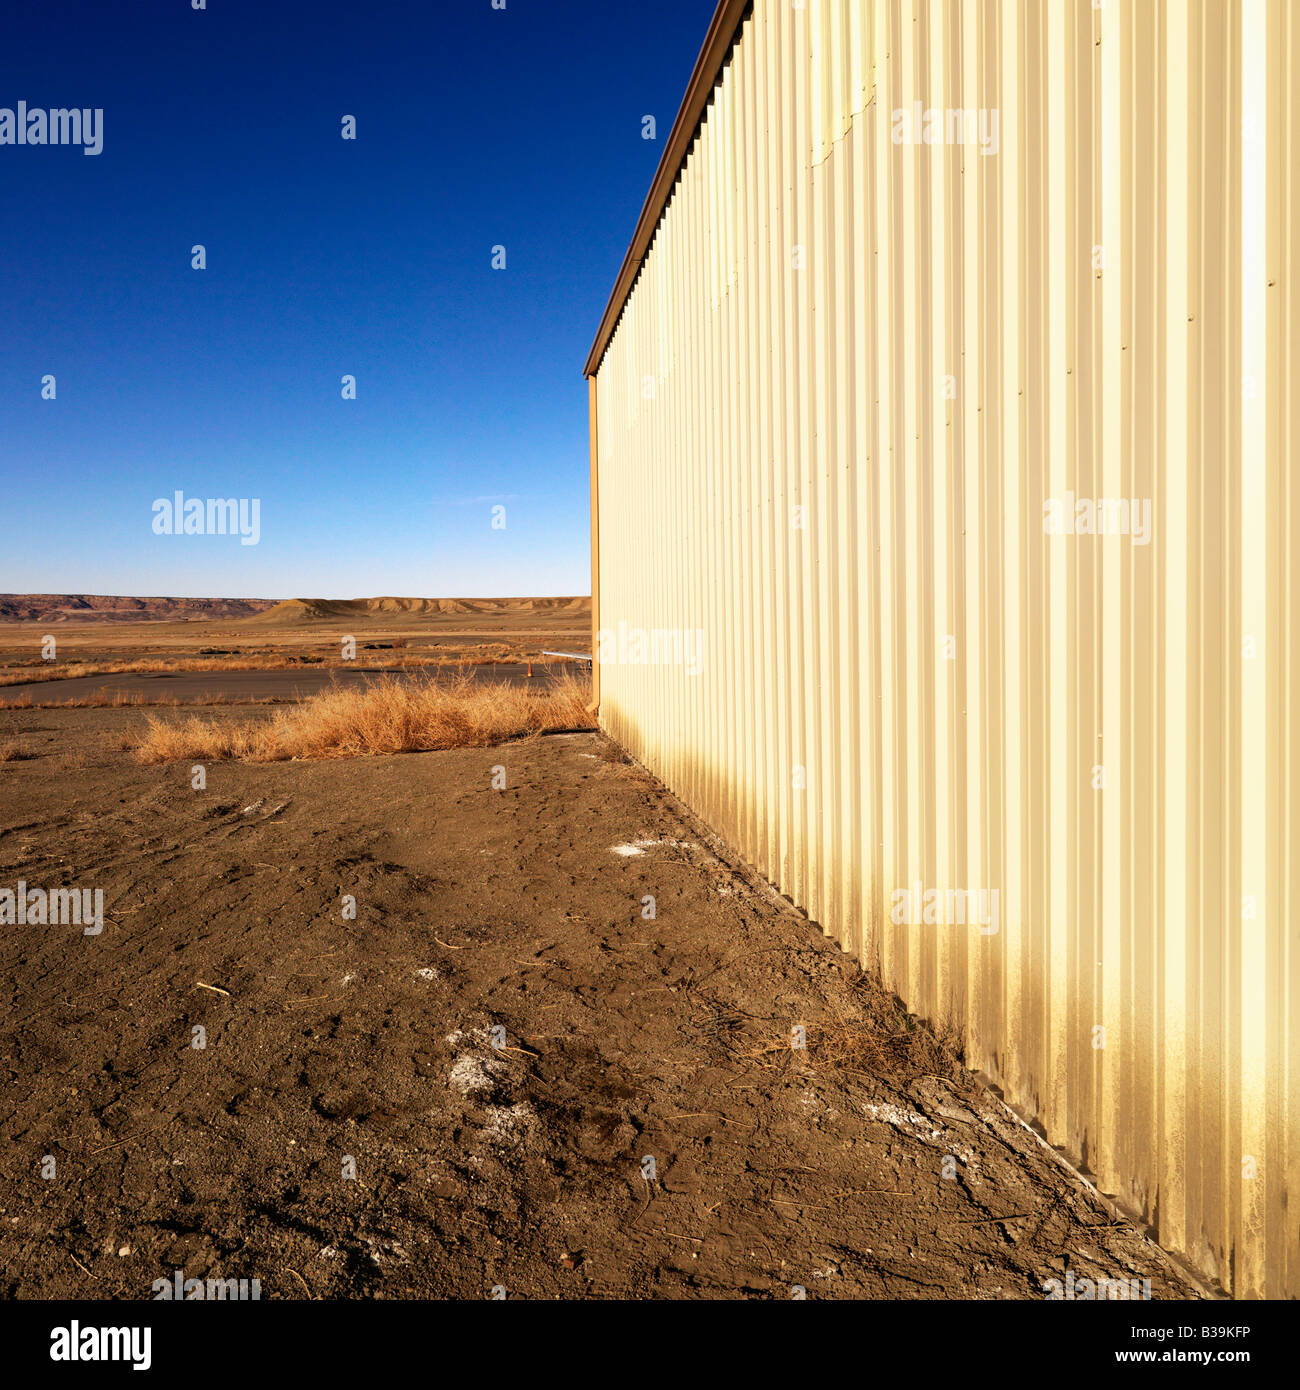 Industrial storage building in rural Utah desert Stock Photo